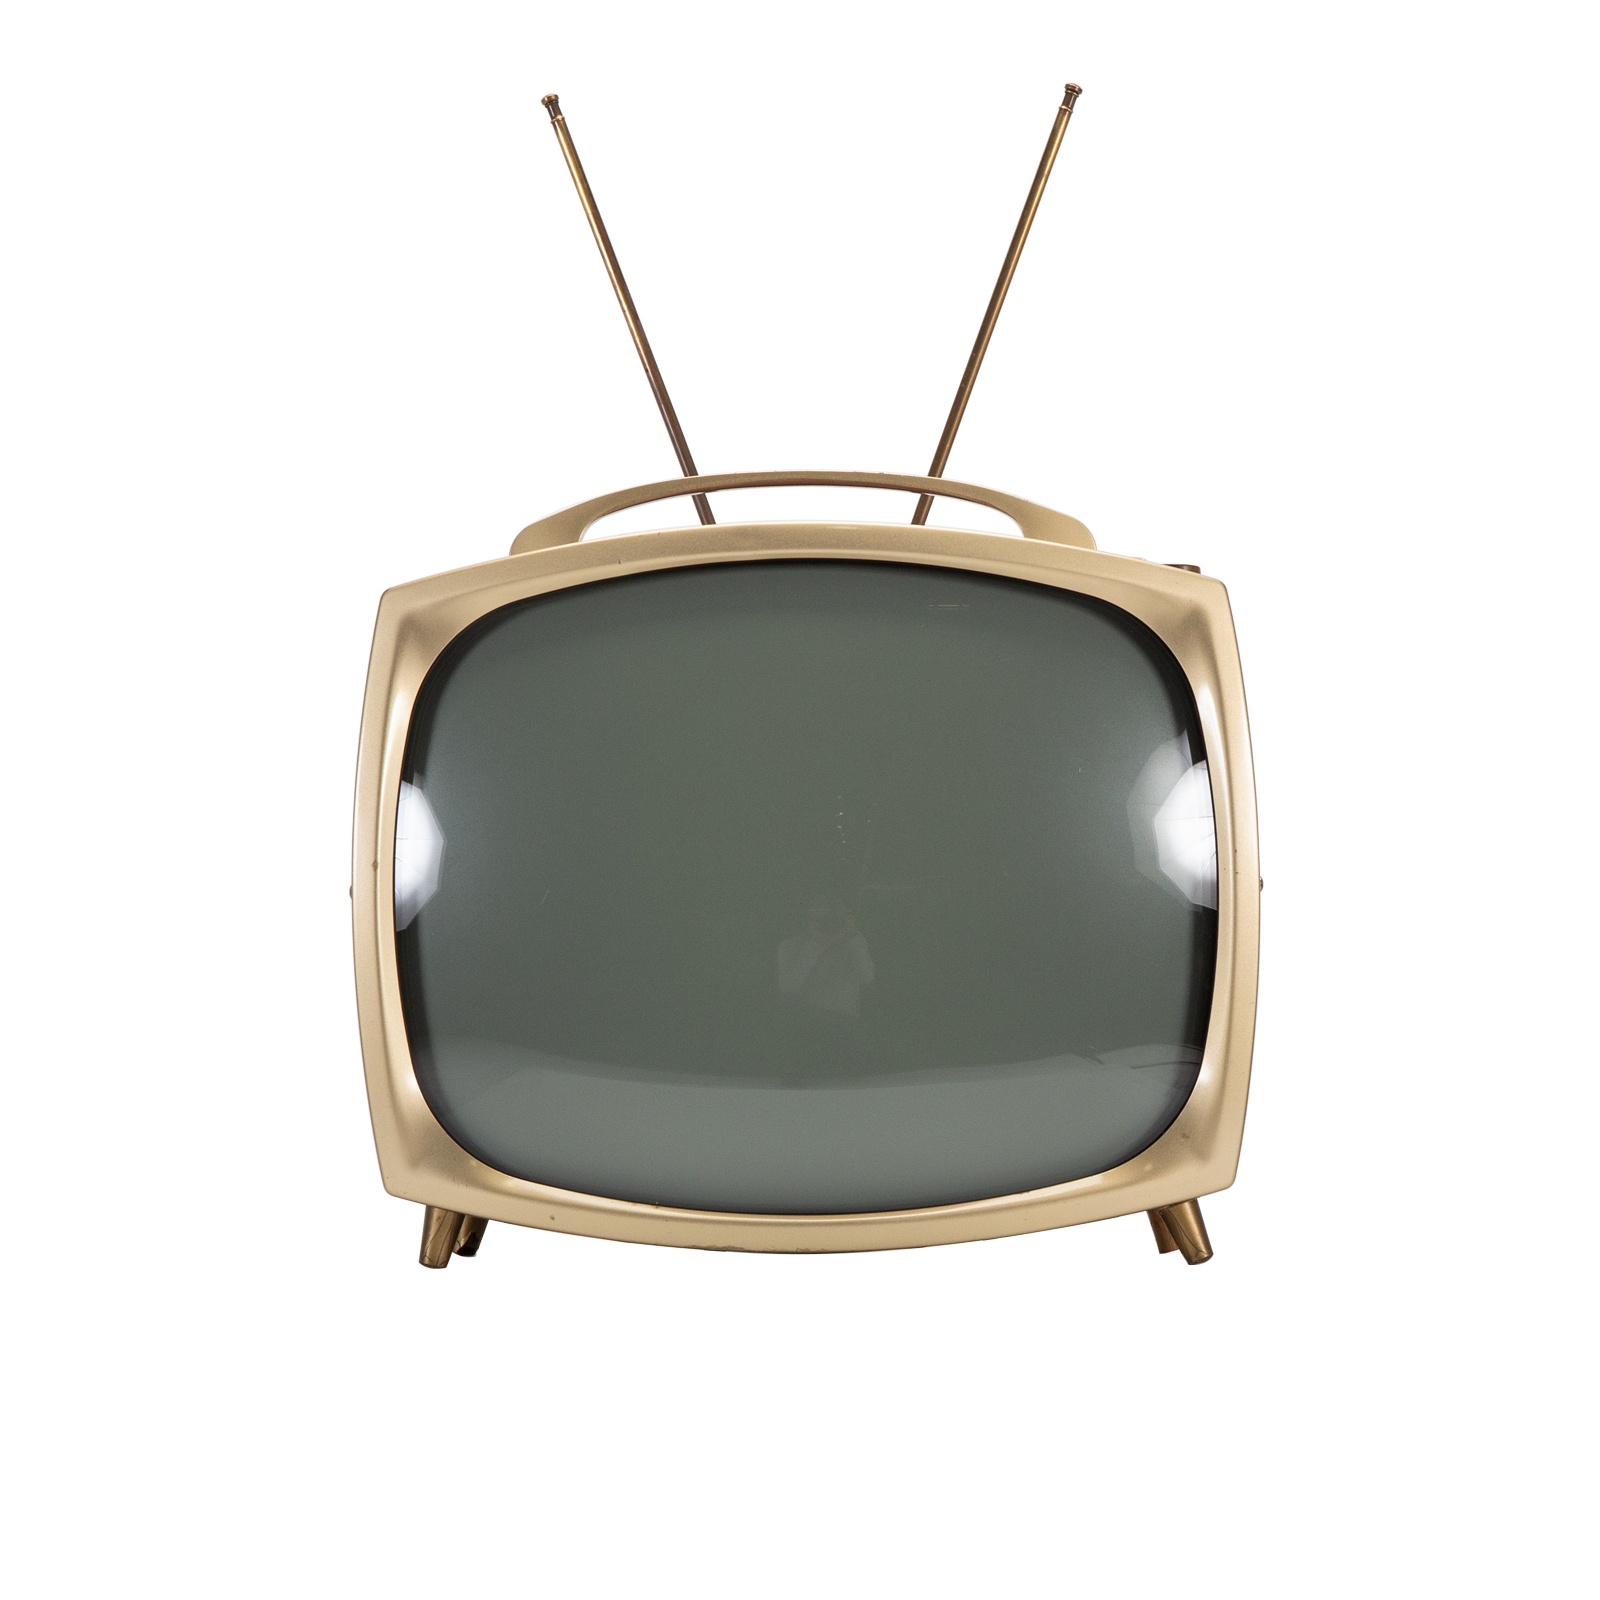 Телевизор сборе купить. Телевизор 1950-х годов. Телевизоры 2000-х годов. Portable TV Set. Bn880 антенной вверх.